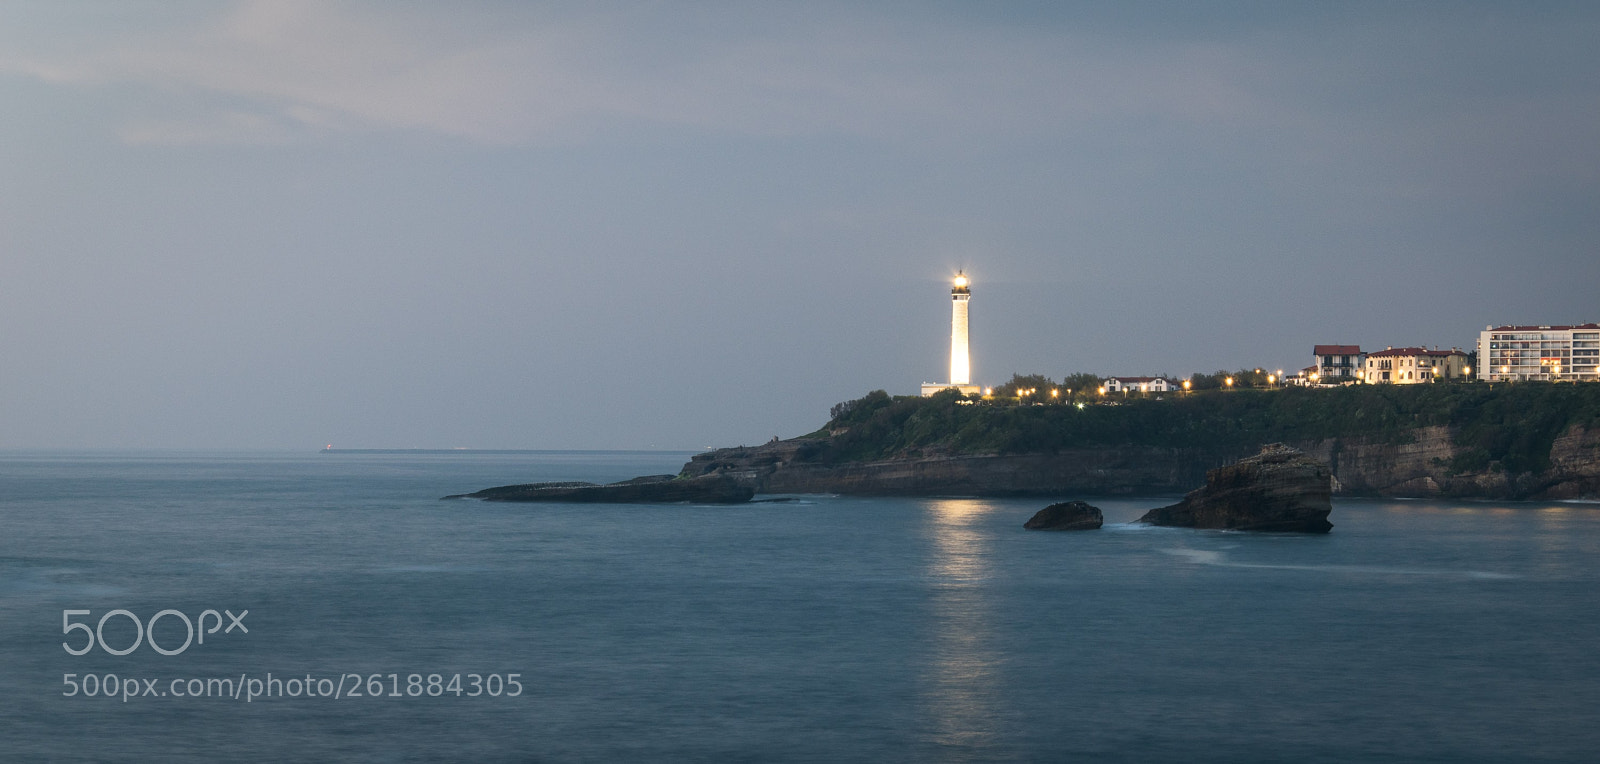 Nikon D5300 sample photo. Biarritz's lighthouse photography